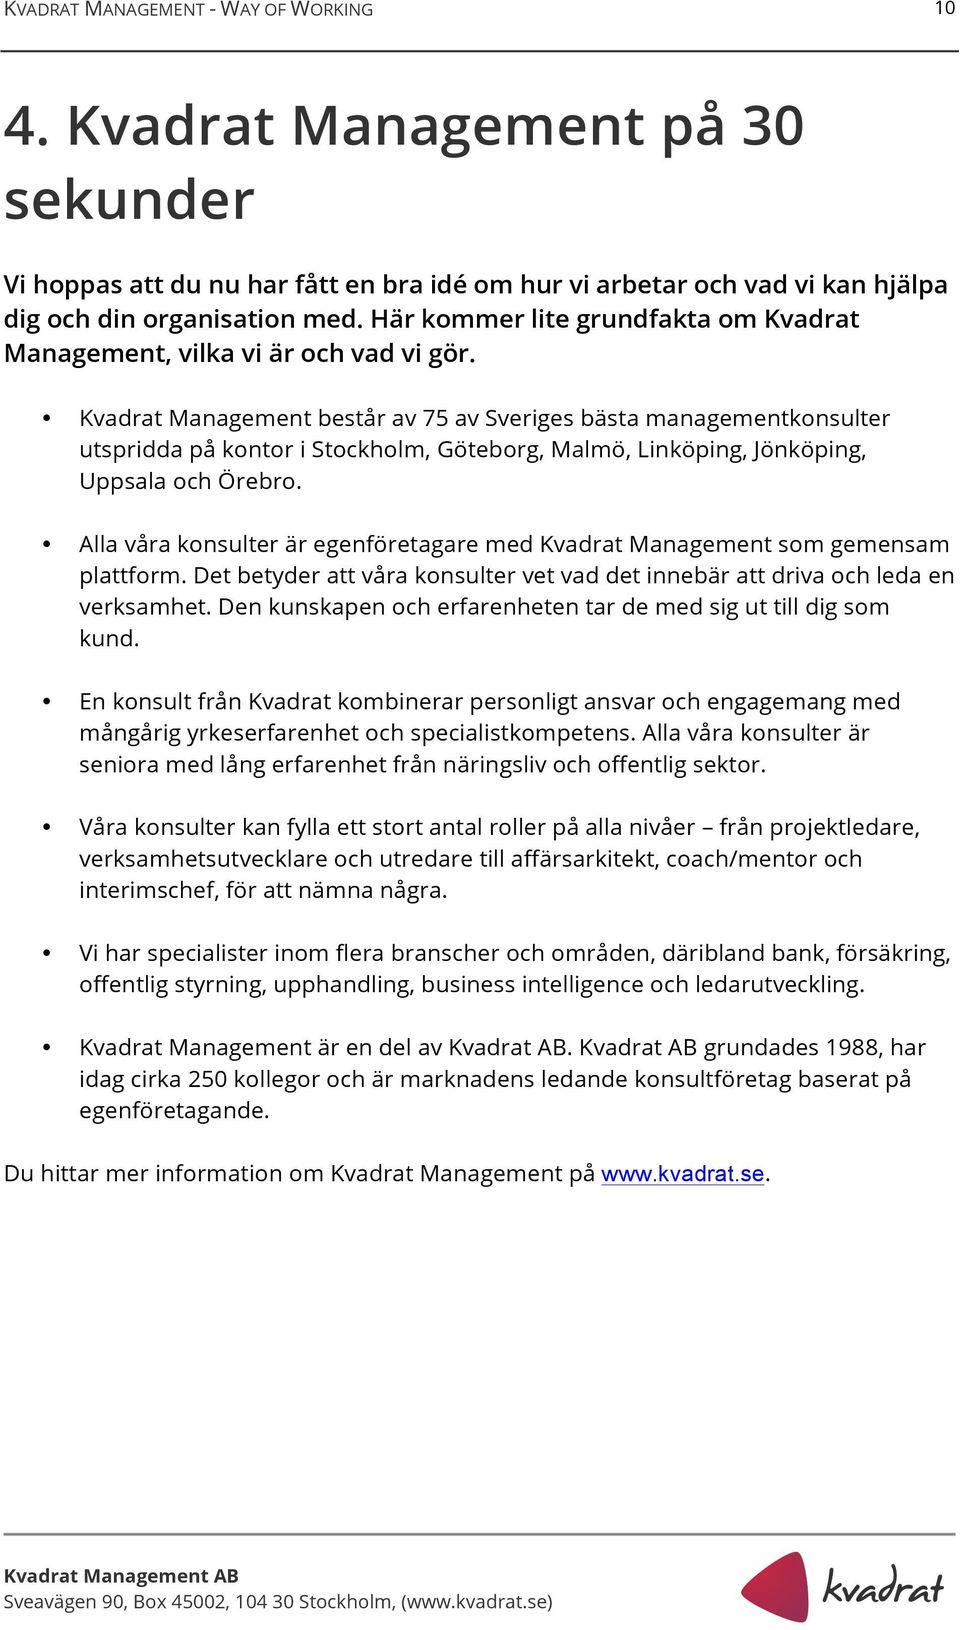 Kvadrat Management består av 75 av Sveriges bästa managementkonsulter utspridda på kontor i Stockholm, Göteborg, Malmö, Linköping, Jönköping, Uppsala och Örebro.